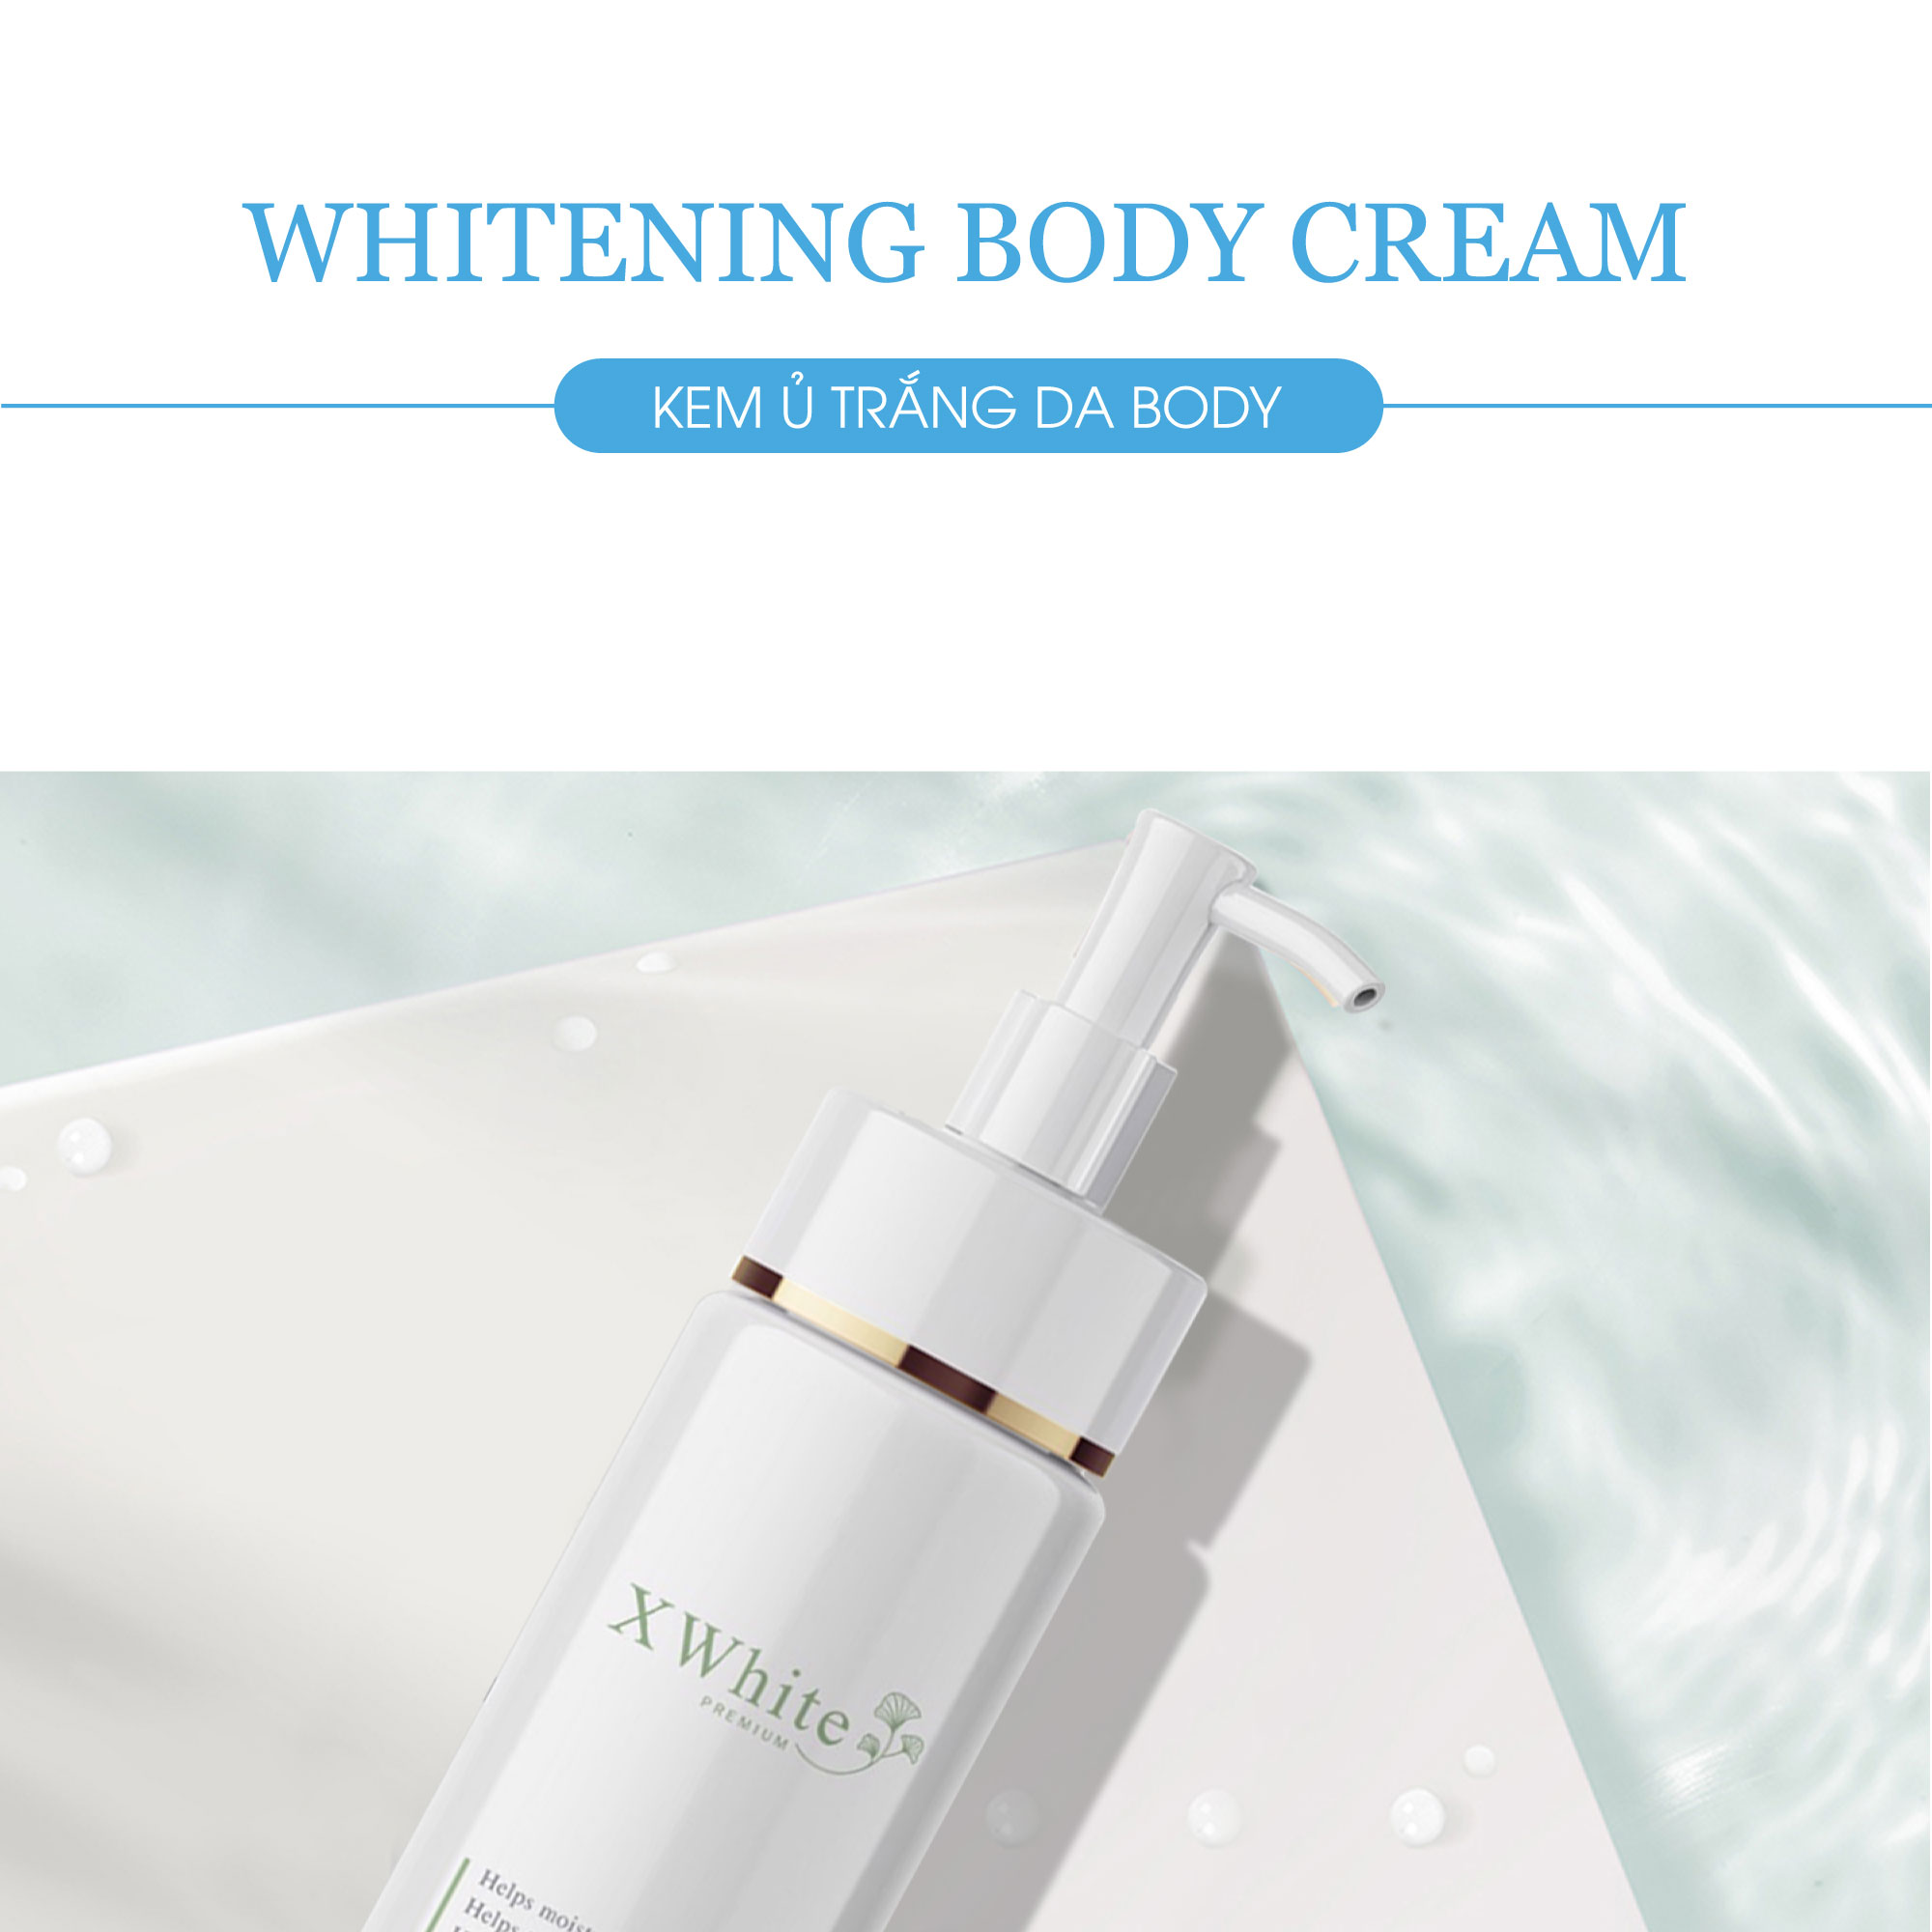 Kem ủ trắng toàn thân an toàn Xwhite được chuyên gia da liễu khuyên dùng 150ml - Whitening Body Cream